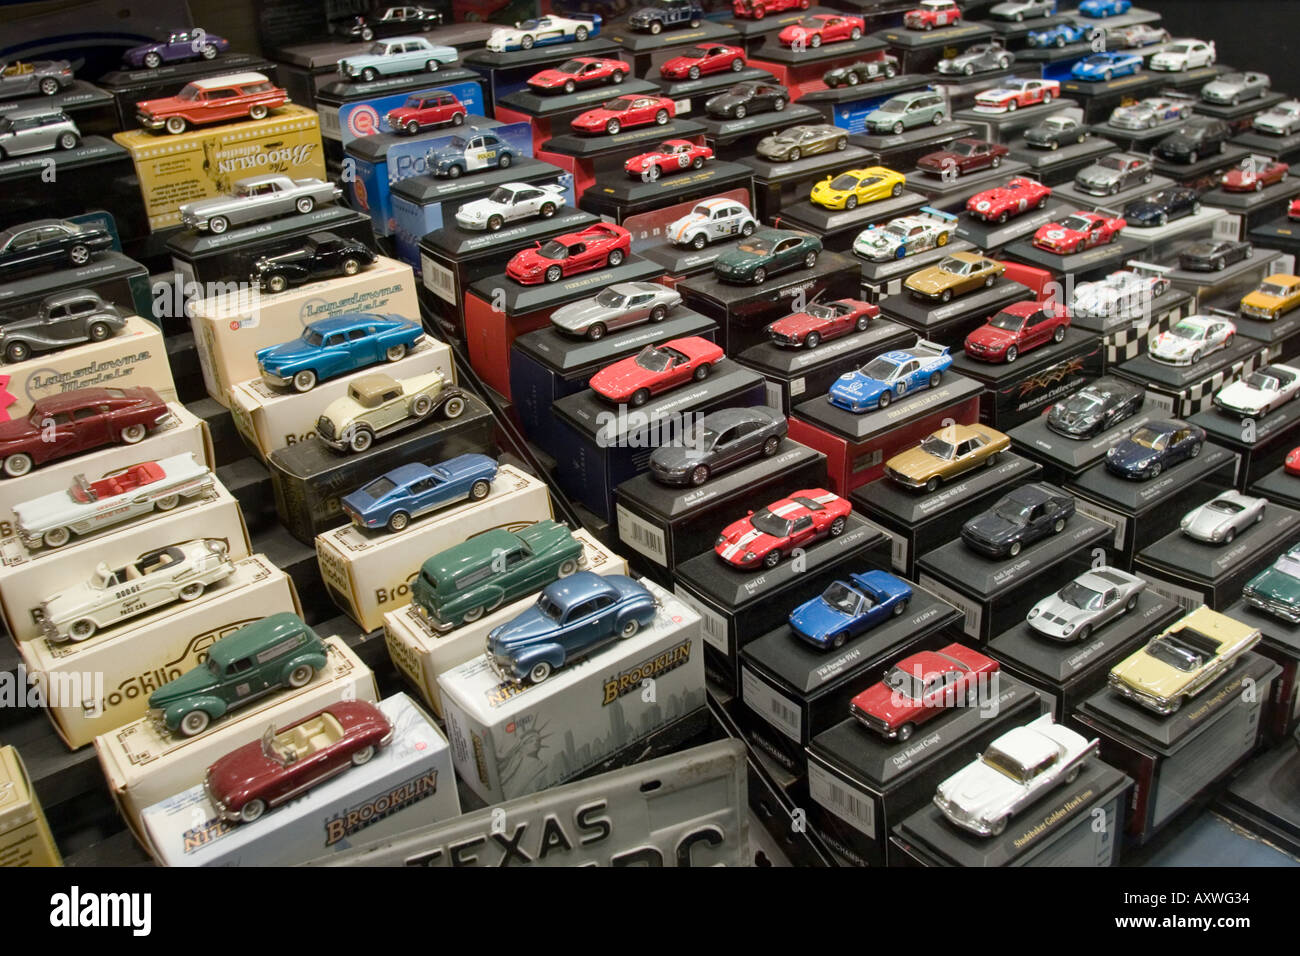 Die cast automobili giocattolo nella finestra di visualizzazione del negozio di giocattoli Foto Stock